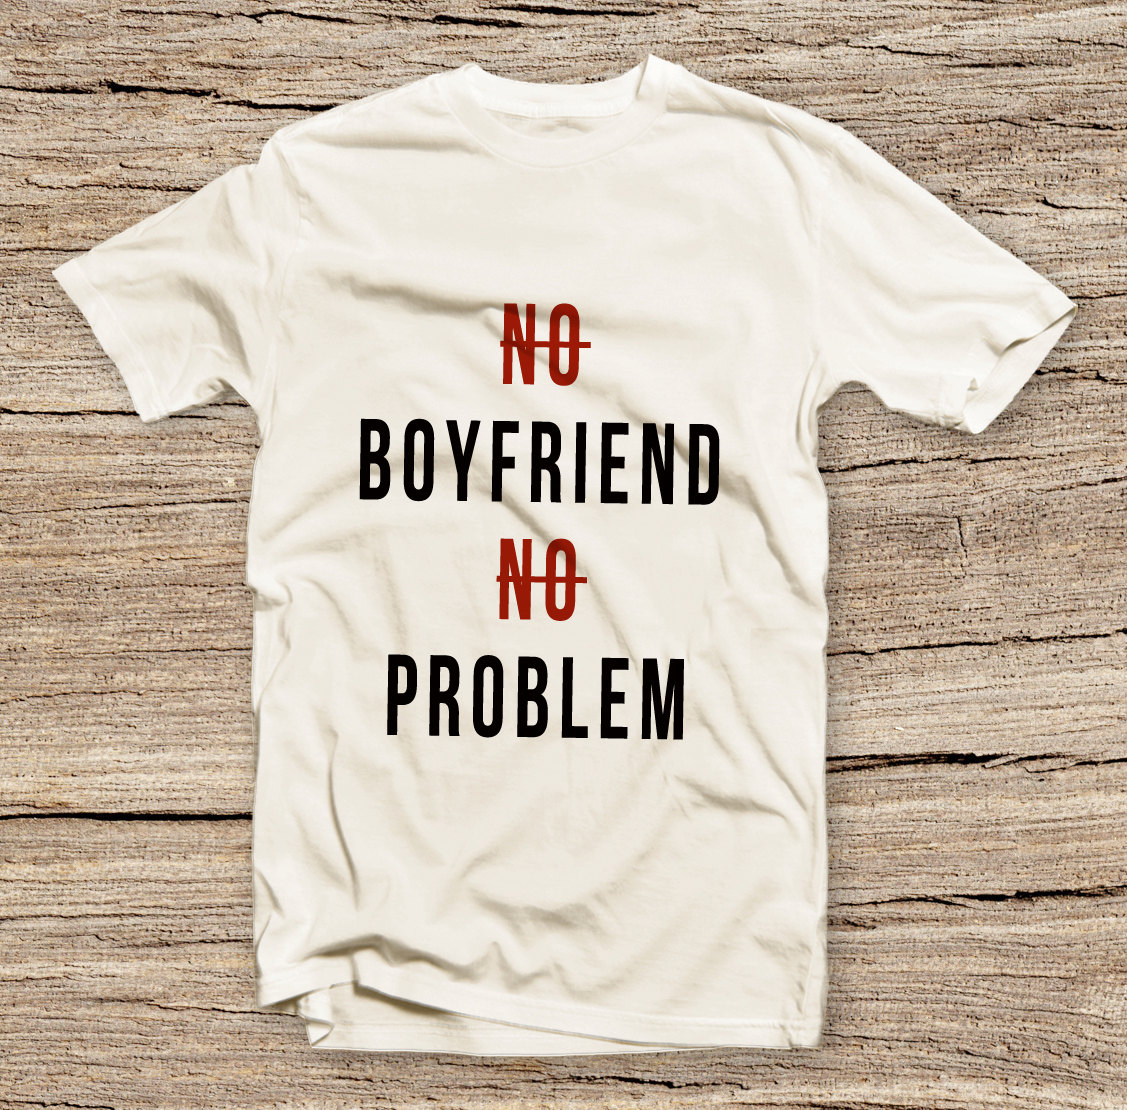 Pts-120 No Boyfriend No Problem Style T-shirt, Fa Text Slogan, Funny Humor T-shirt, Unisex Tee, Fashion Printed T-shirt